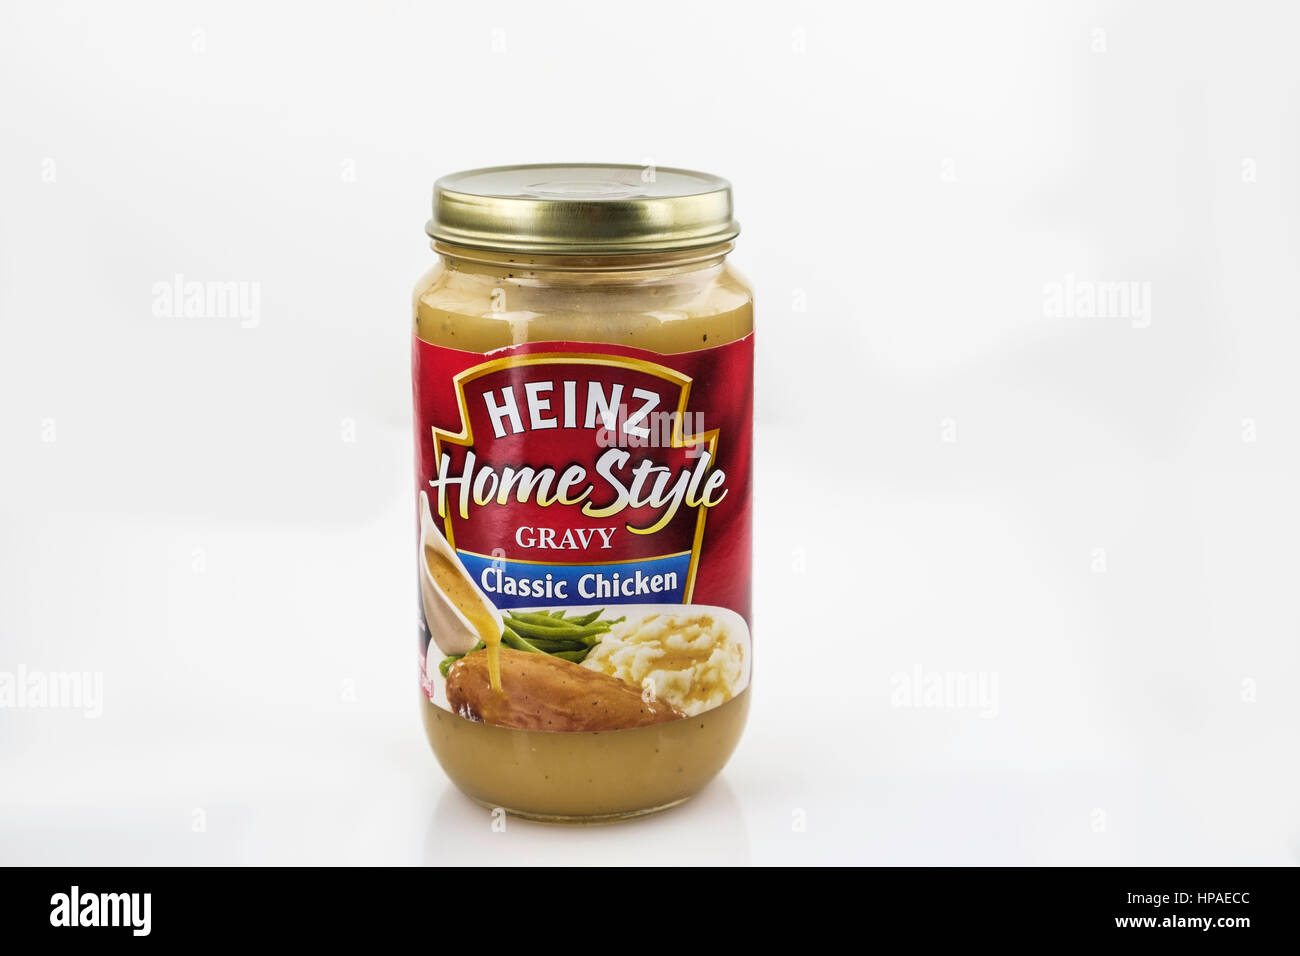 Un vasetto di Heinz brand Home Stile con sugo di carne, pollo aromatizzato. ritaglio, copyspace. Stati Uniti d'America. Foto Stock